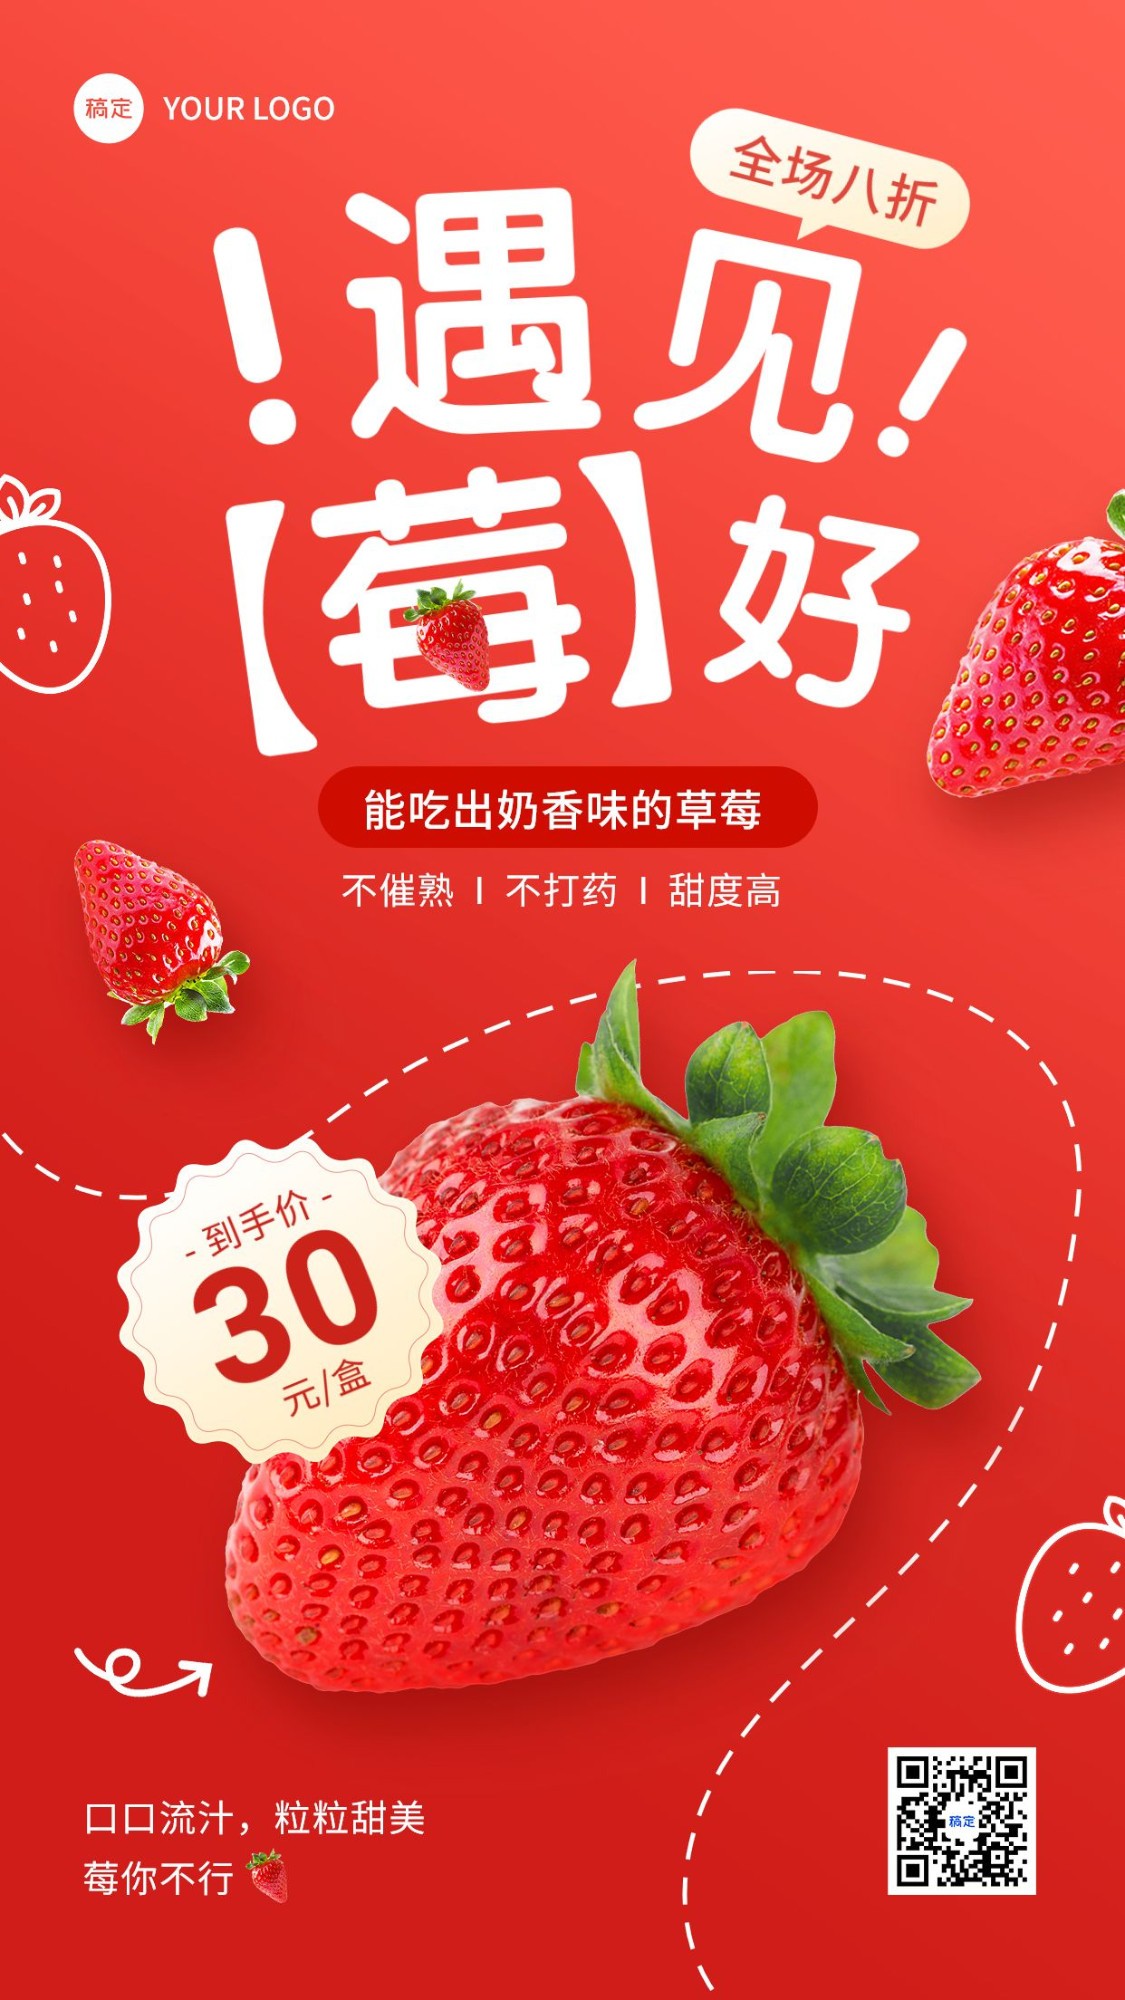 食品生鲜草莓营销产品展示打折促销手机海报